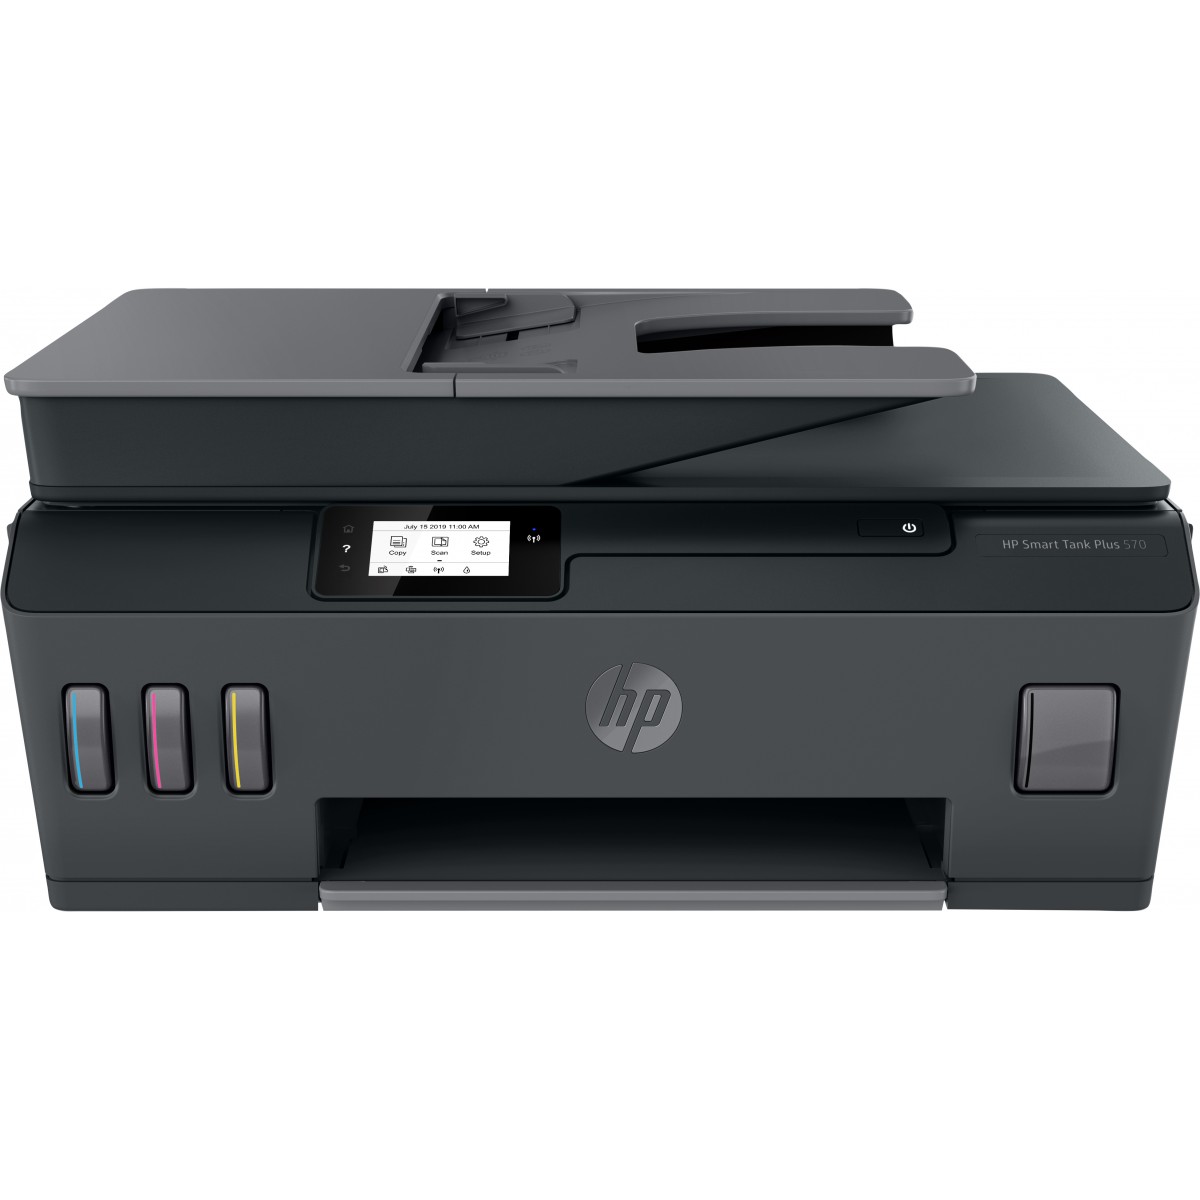 HP Smart Tank Plus 570 Wireless All-in-One - Multifunction Printer - Inkjet